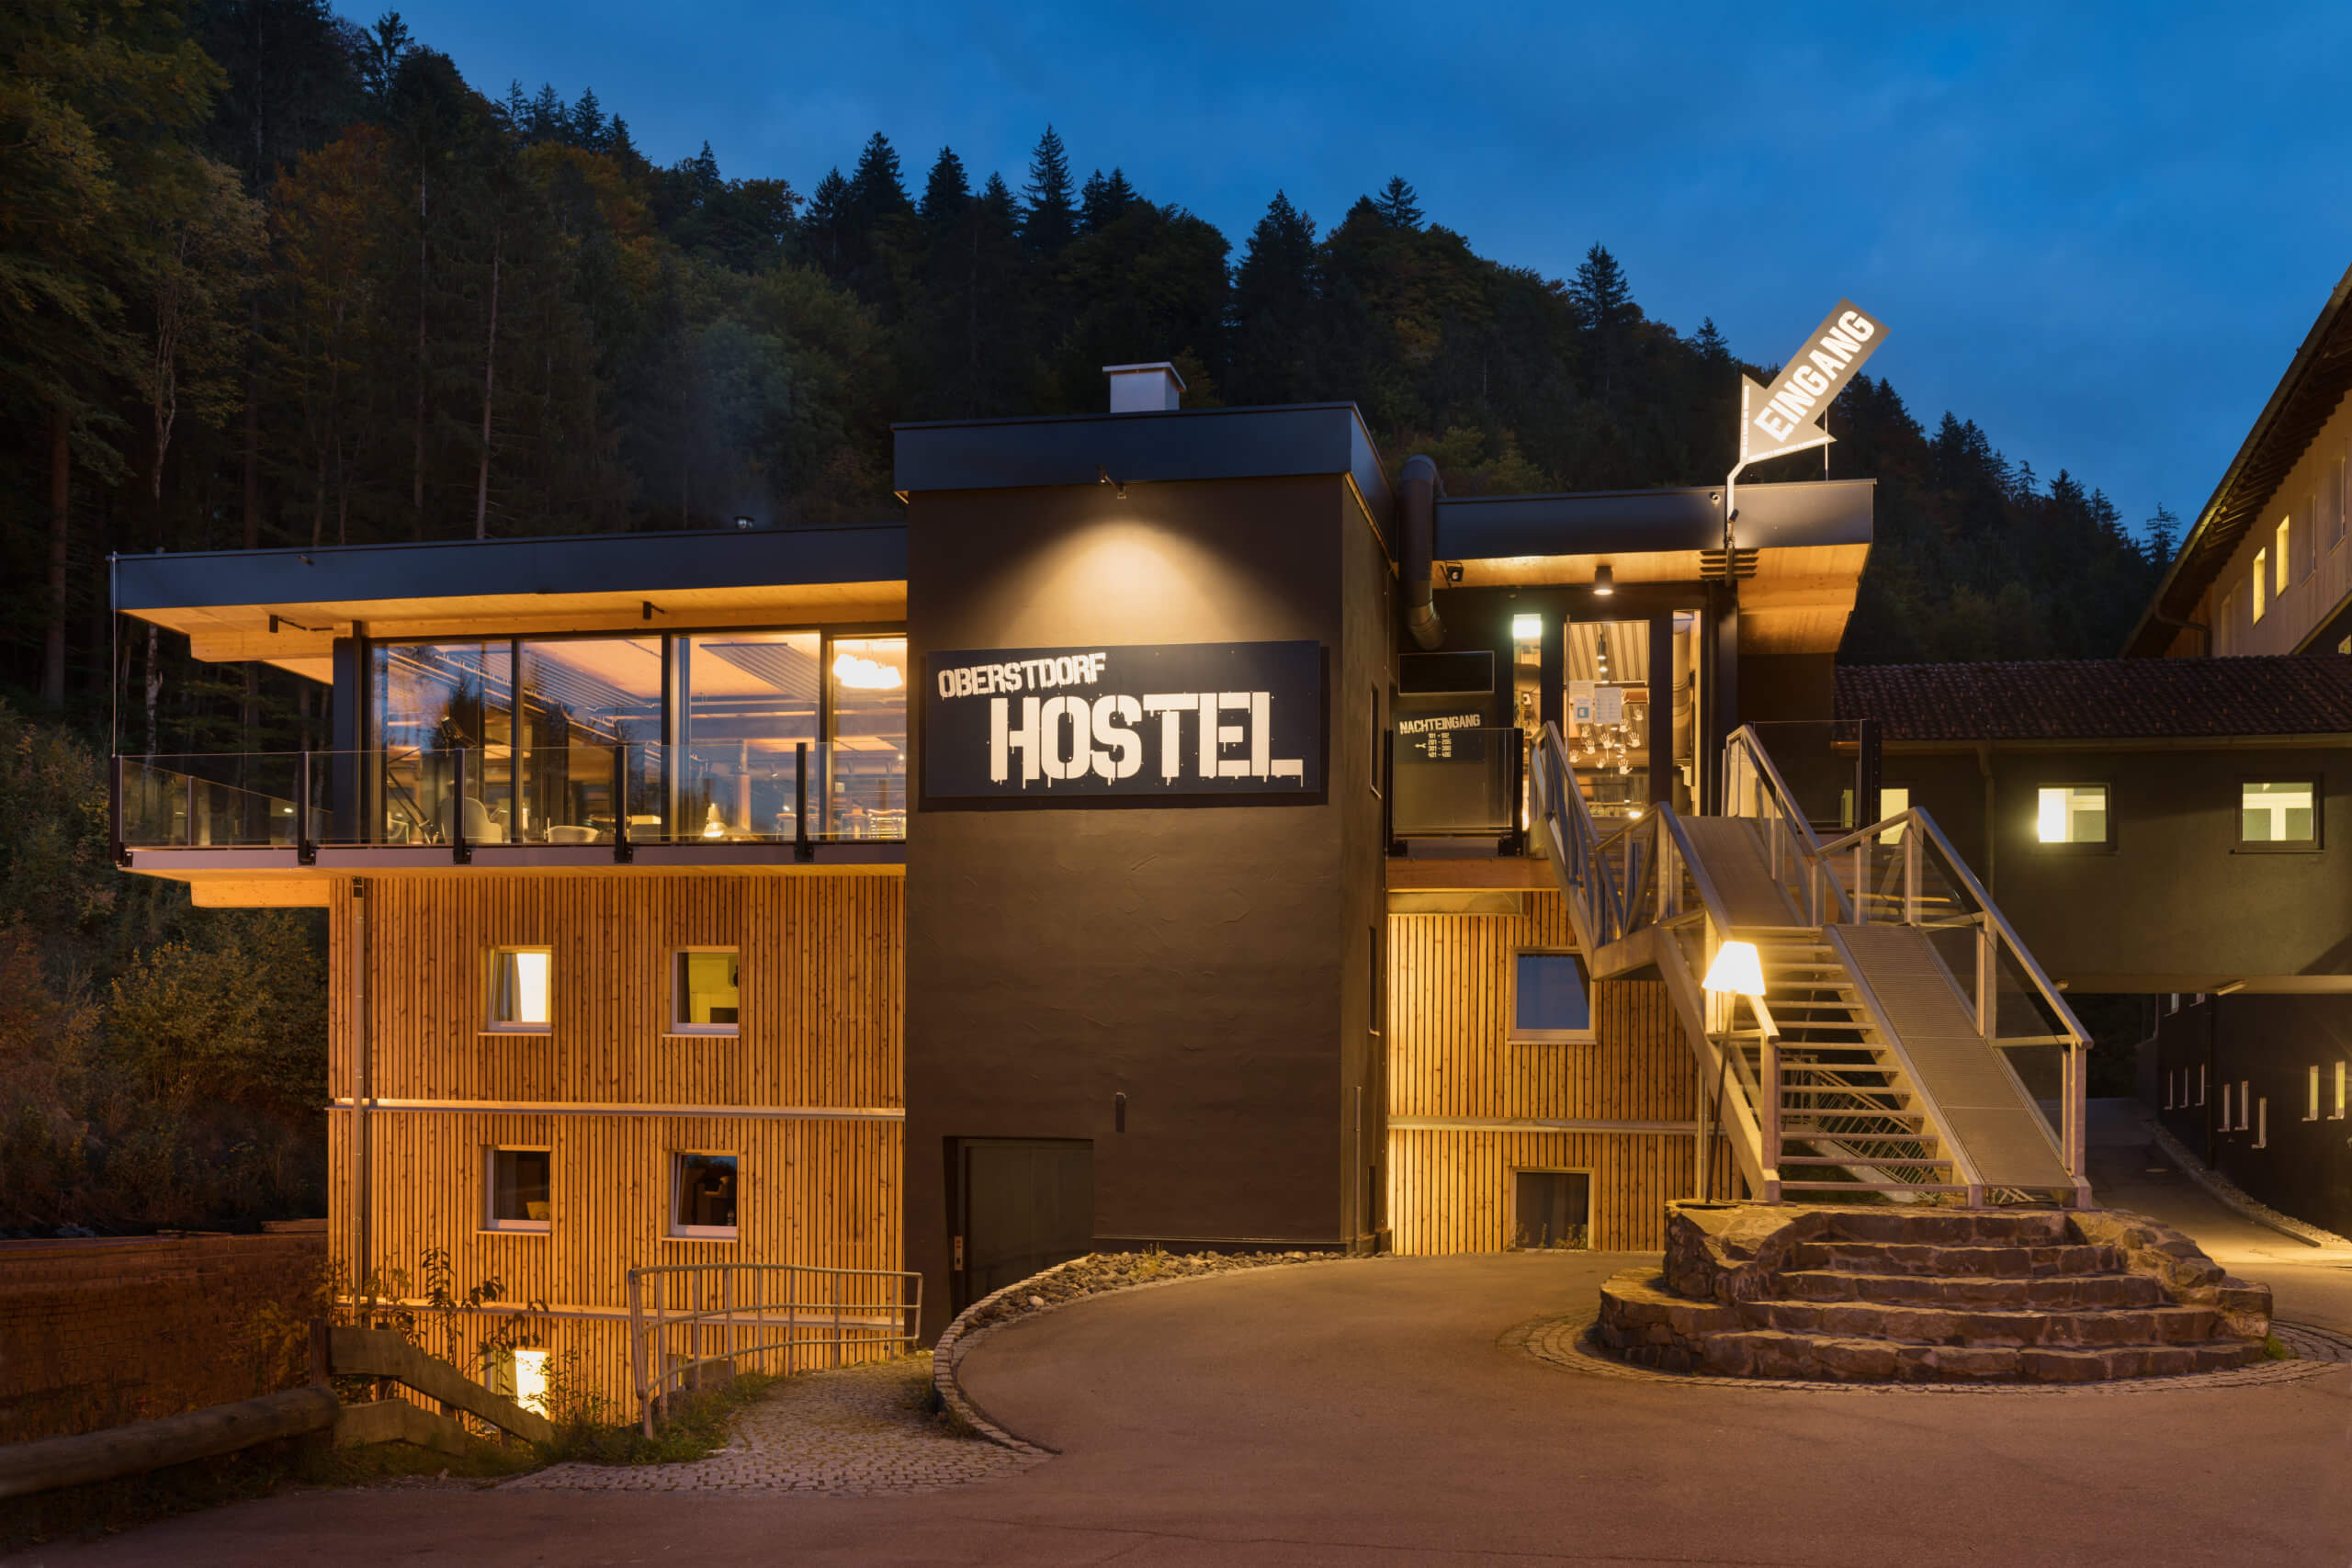 Das Bild zeigt eine Aussenansicht des Oberstdorf Hostel bei Nacht.